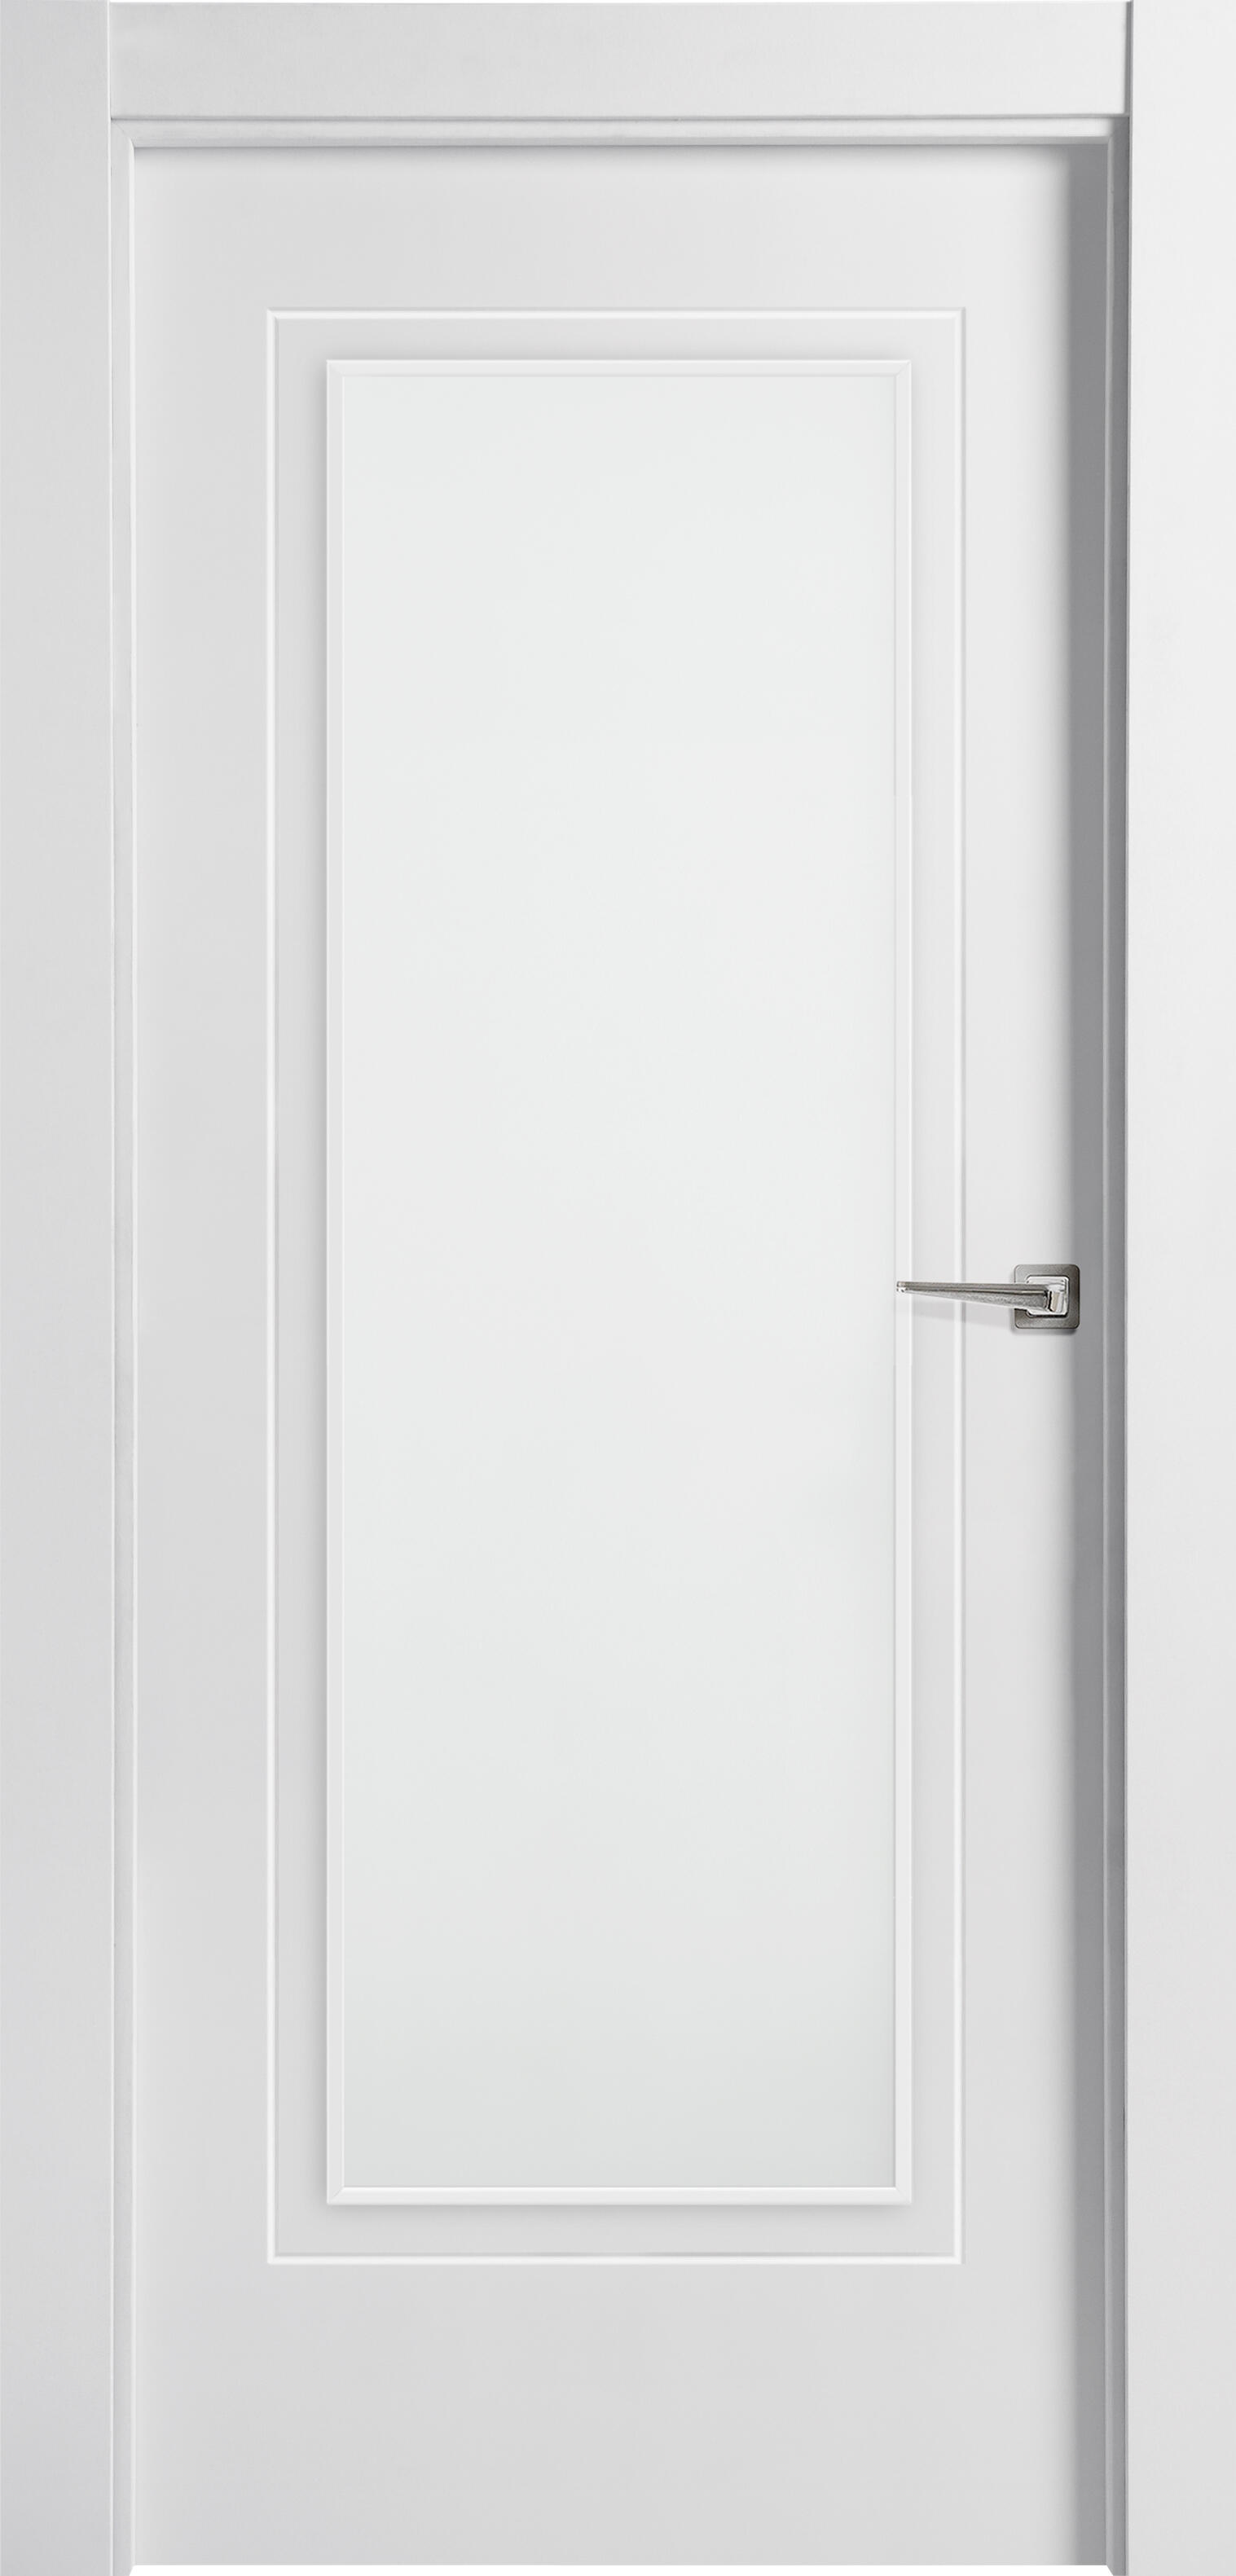 Puerta miramar blanco de apertura izquierda con cristal 9x82.5 cm